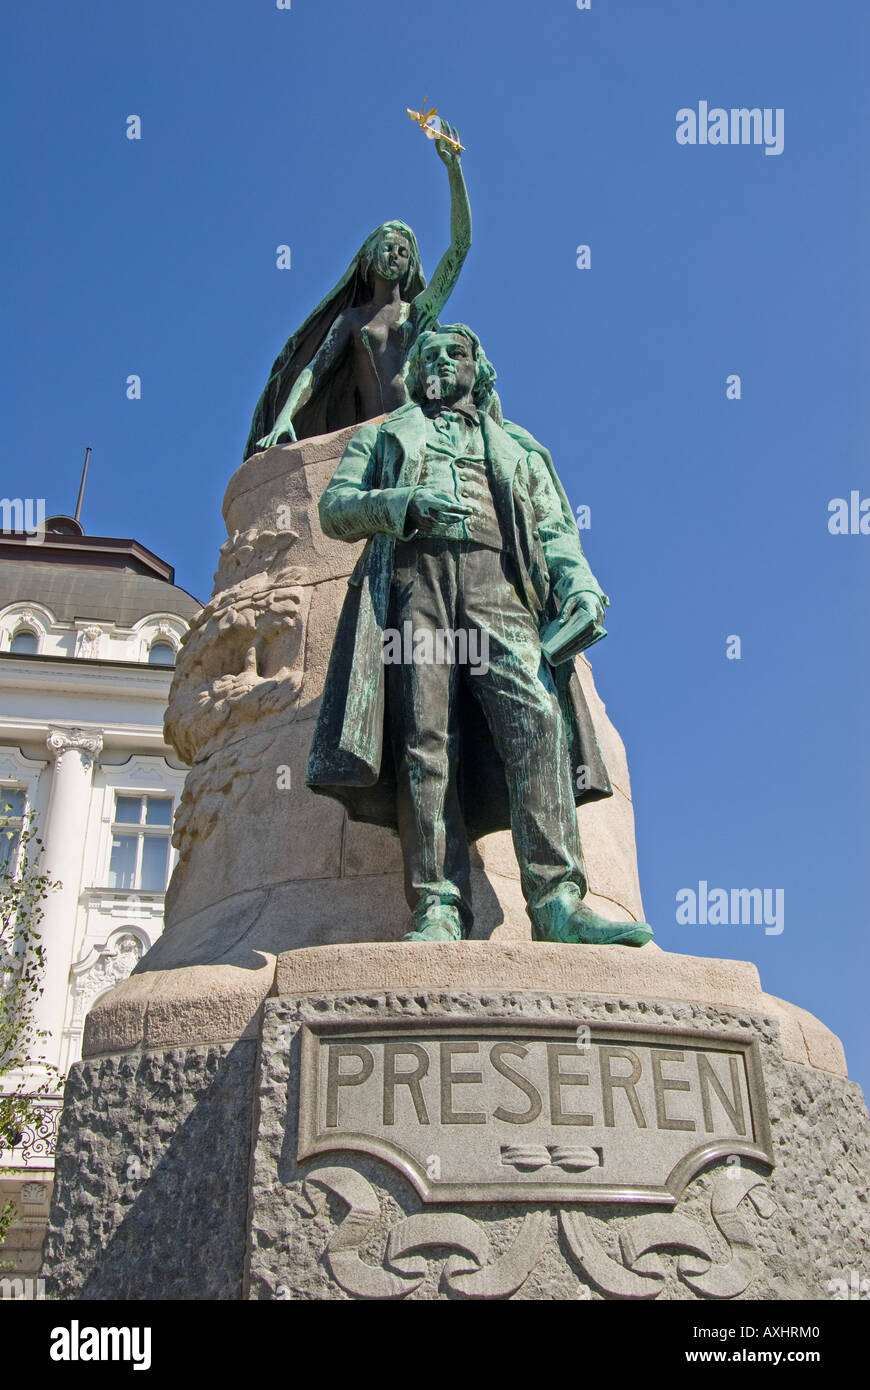 Ljubljana, Slovenia. Monument to National Poet Preseren in Presernov trg (Preseren Square) Stock Photo